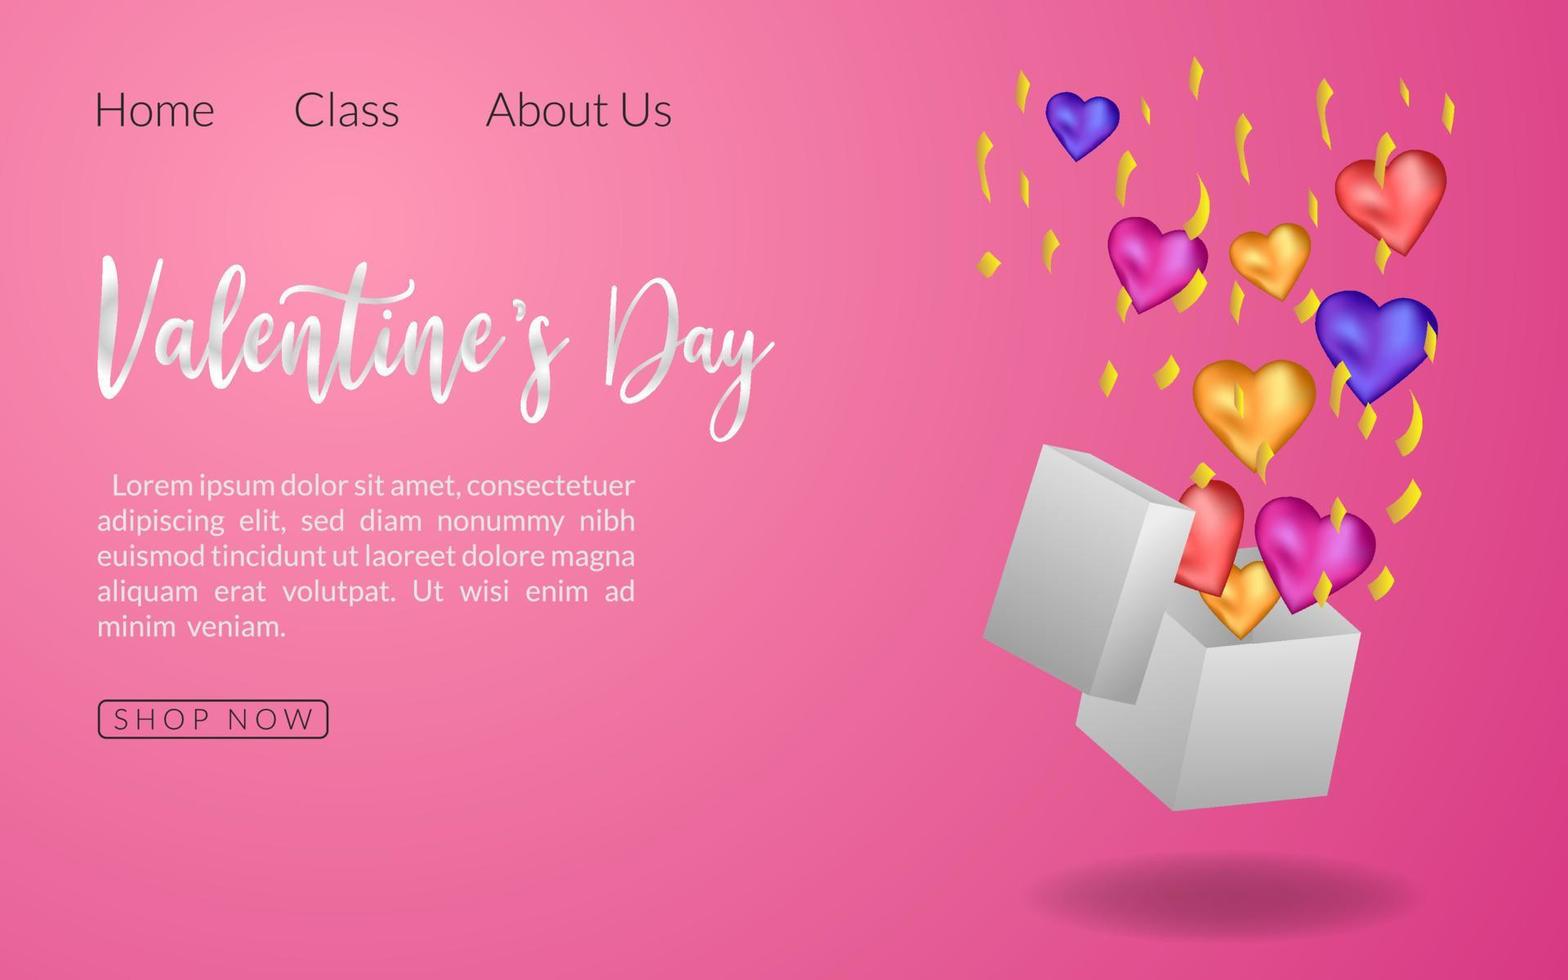 Landing Page rosa Hintergrund Romantik Illustration, Gruß Feier Geschenk Valentinstag Dekoration isoliert, Überraschung Herz Gruß vektor